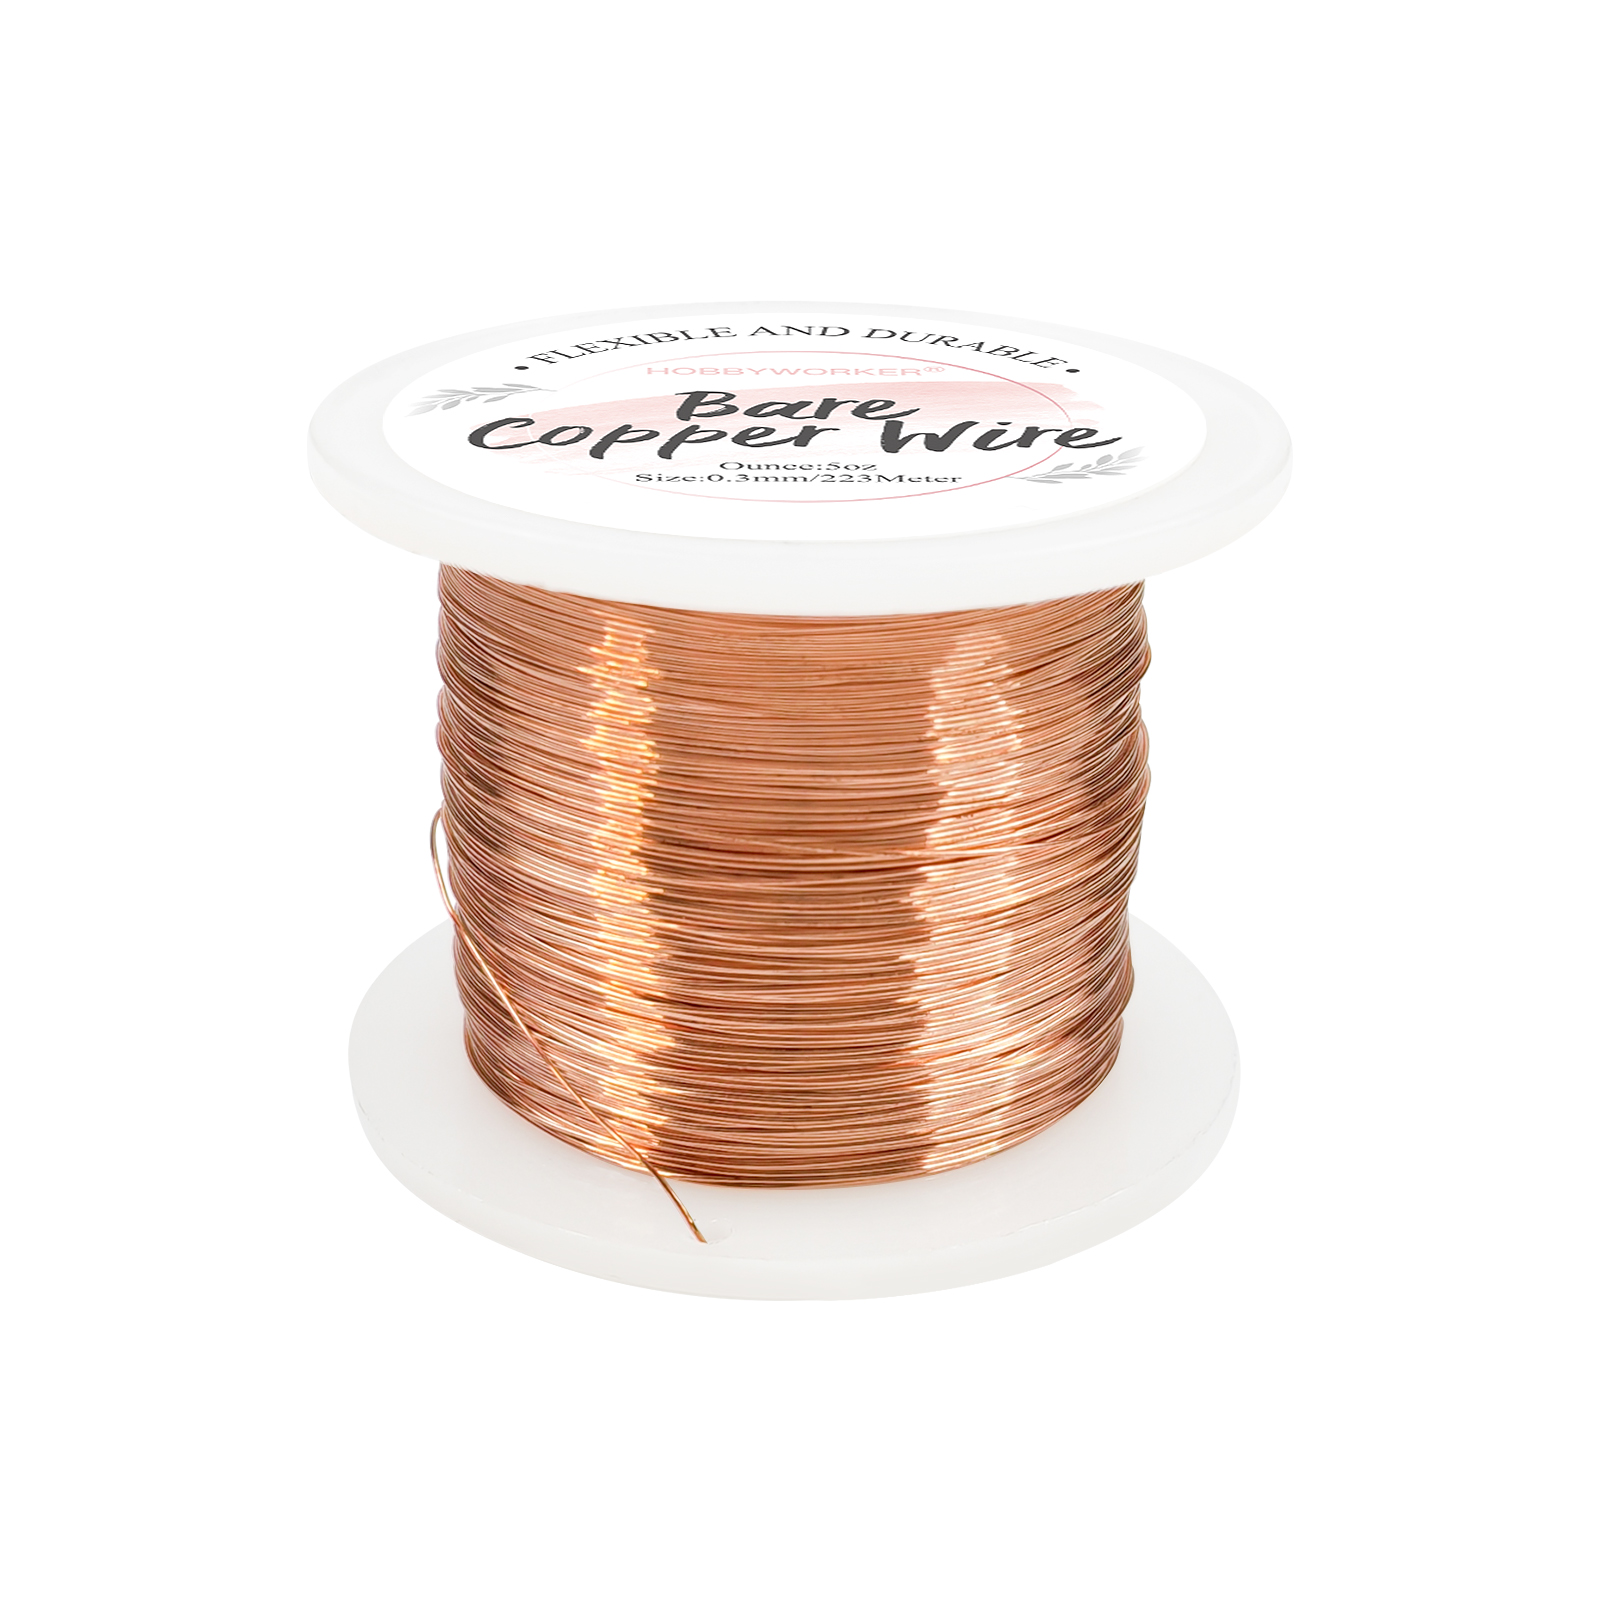 hobbyworker 28 gauge(0.3mm) copper craft wire